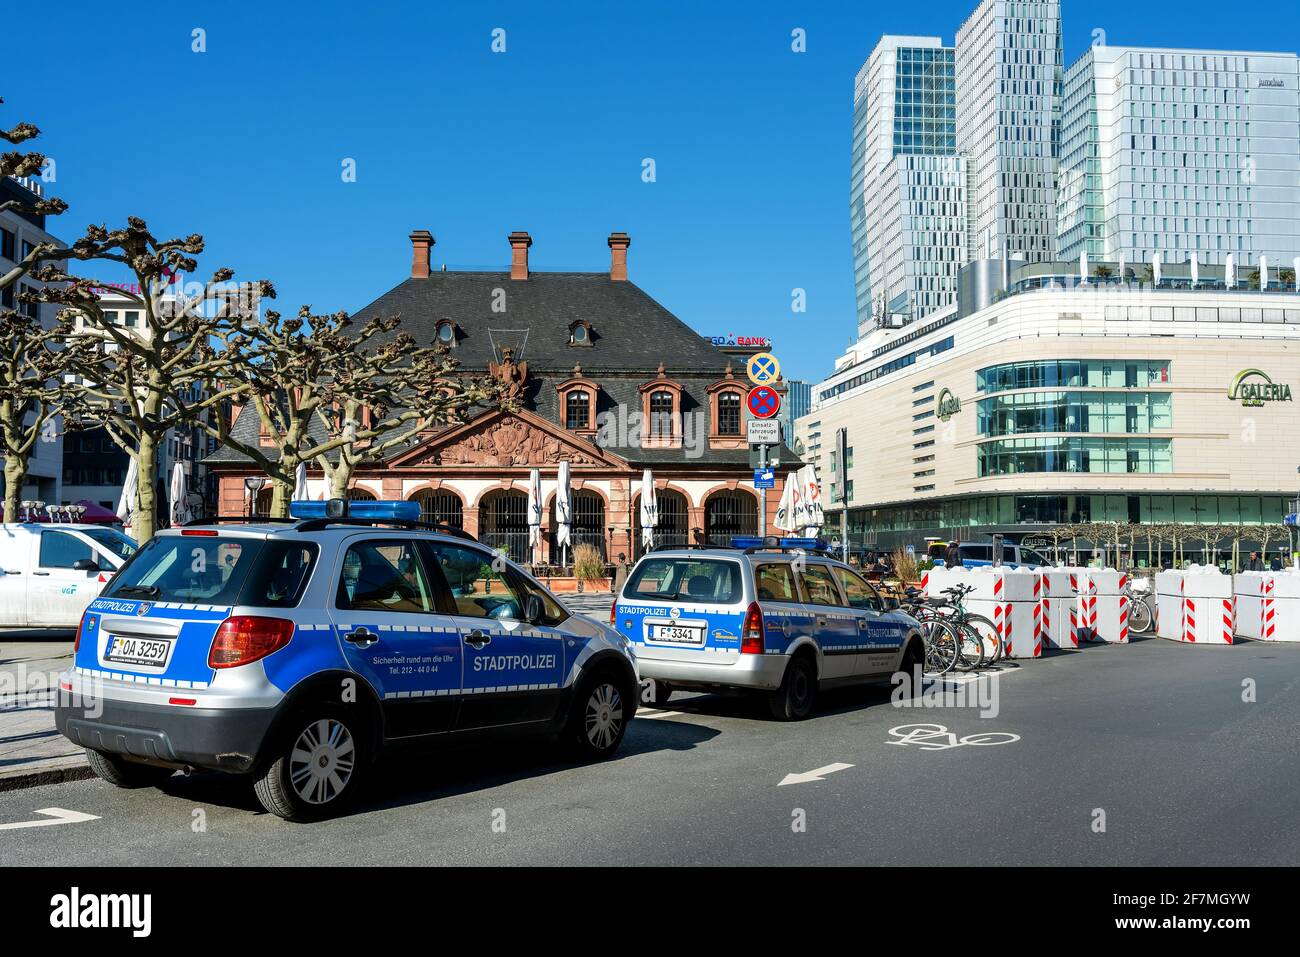 Polizia cittadina nel centro di Francoforte sul meno, vicino al Zeil. A causa della pandemia di Corona, la polizia ha aumentato la sua presenza in città. Foto Stock